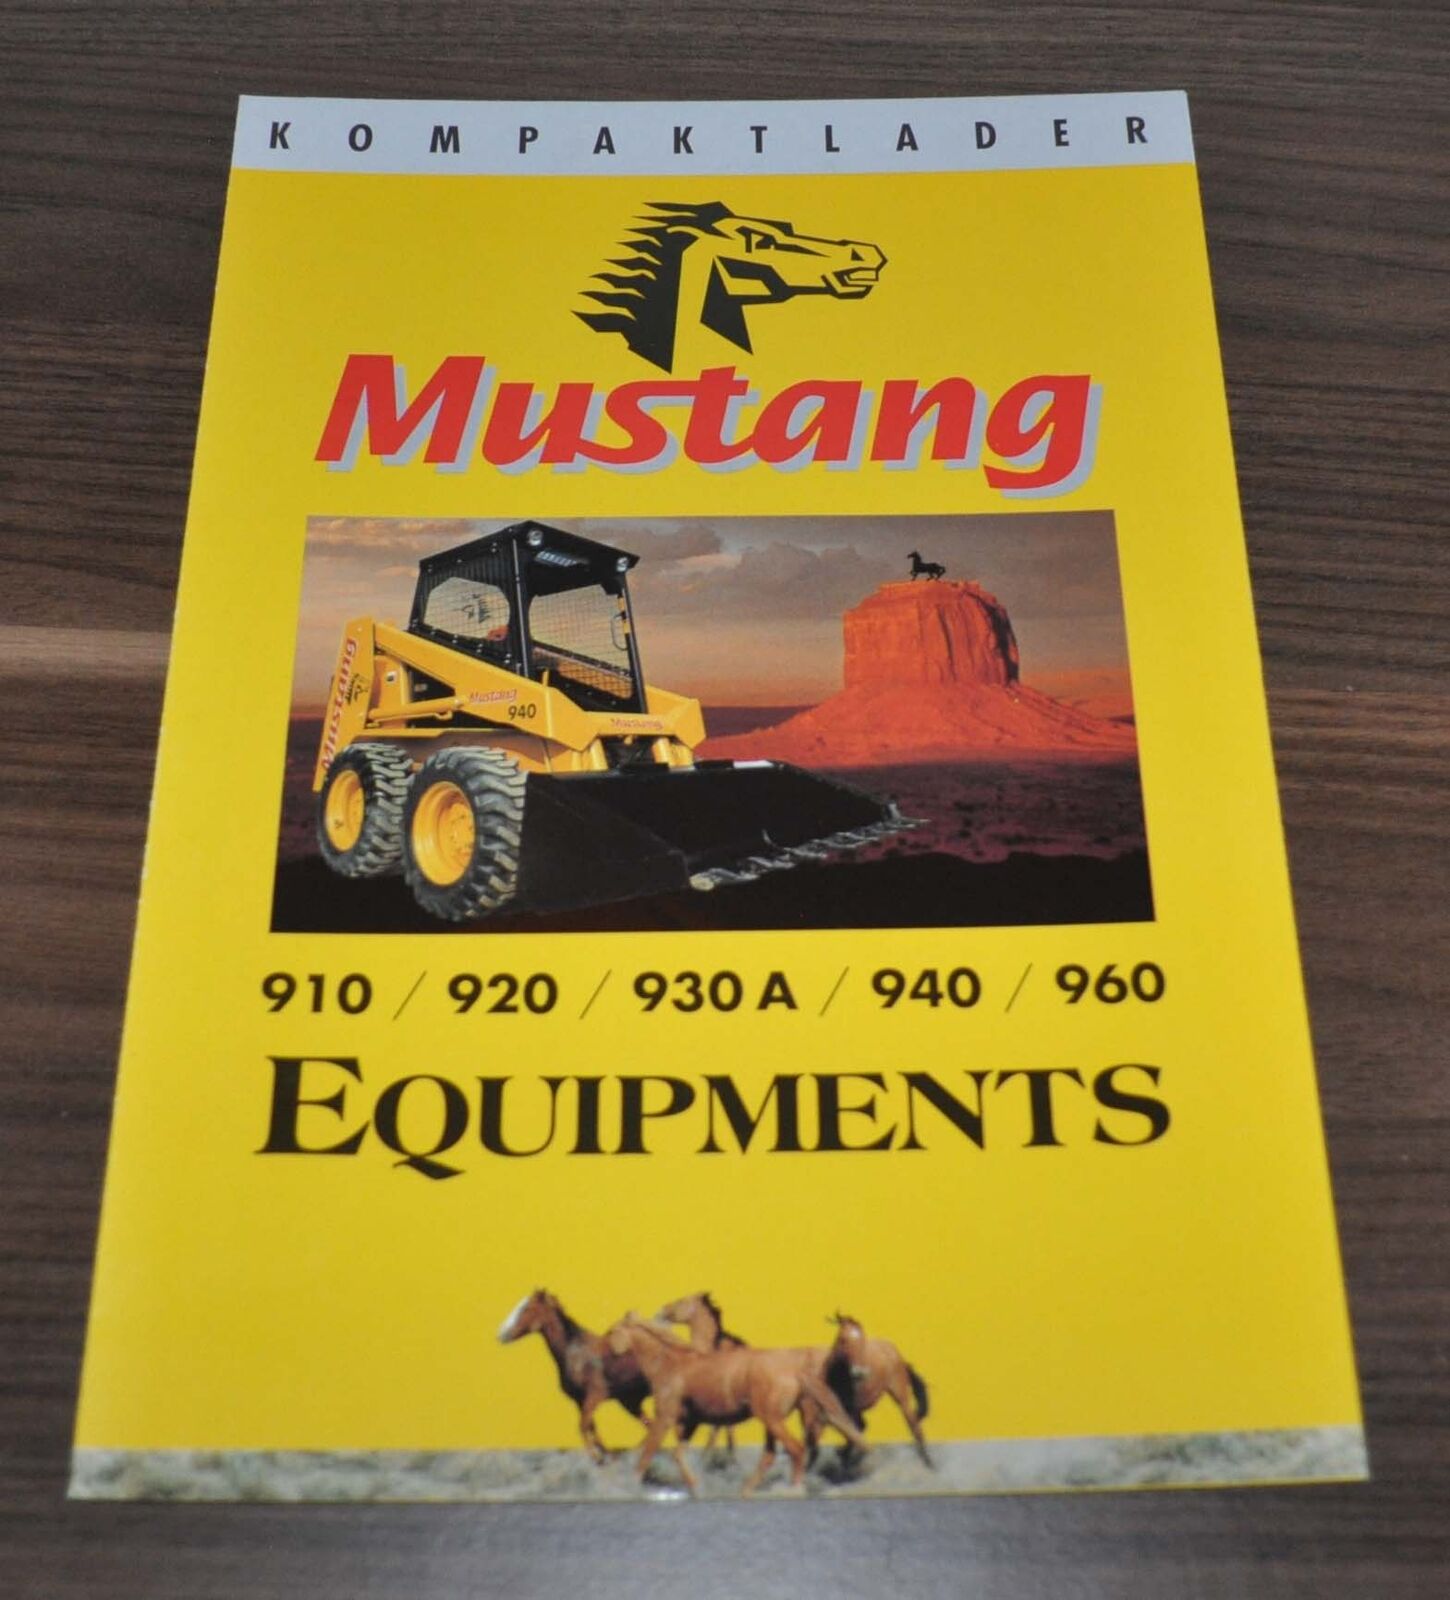 Mustang 910 920 930 940 960 Kompaktlader Equipments Brochure Prospekt D